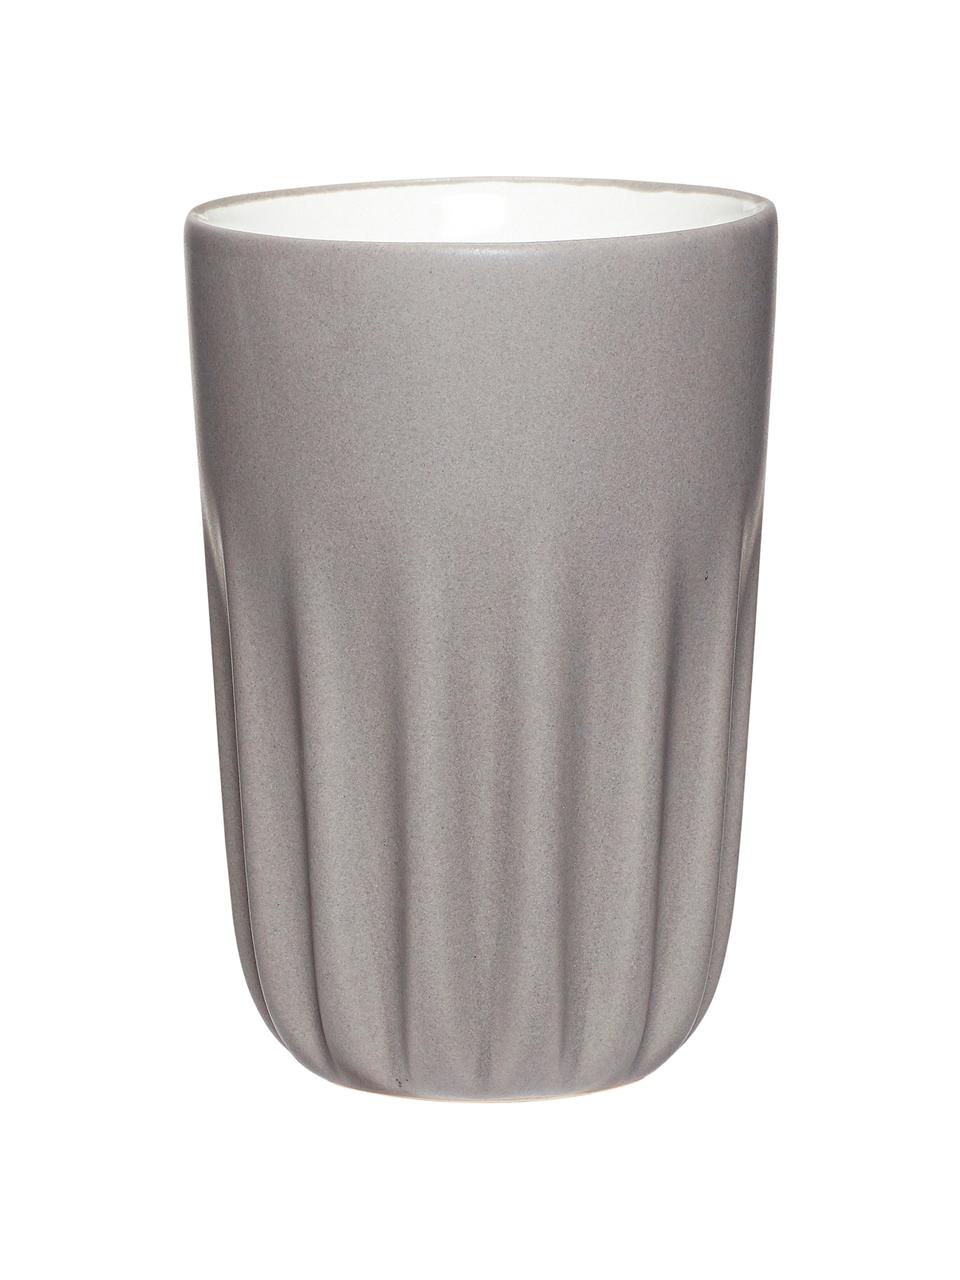 Sada pohárků z keramiky Erlang, 3 díly, Bílá, černá, šedá